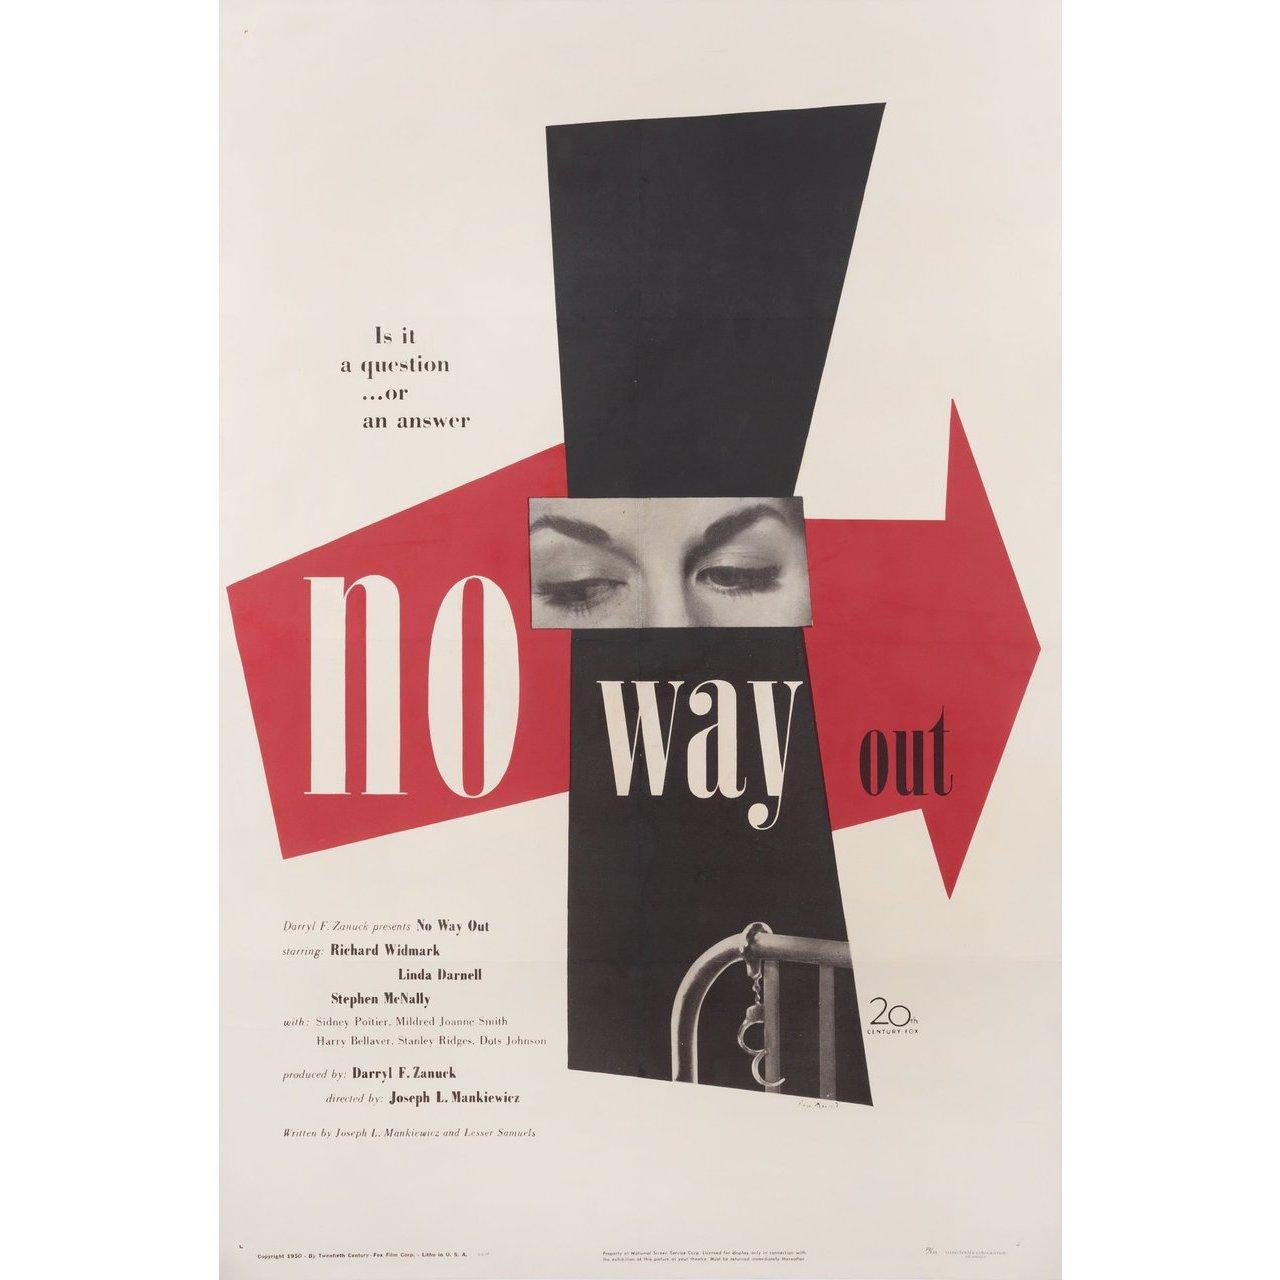 Original 1950 U.S. Plakat von Paul Rand für den Film No Way Out unter der Regie von Joseph L. Mankiewicz mit Richard Widmark / Linda Darnell / Stephen McNally / Sidney Poitier. Guter Zustand, gefaltet. Viele Originalplakate wurden gefaltet